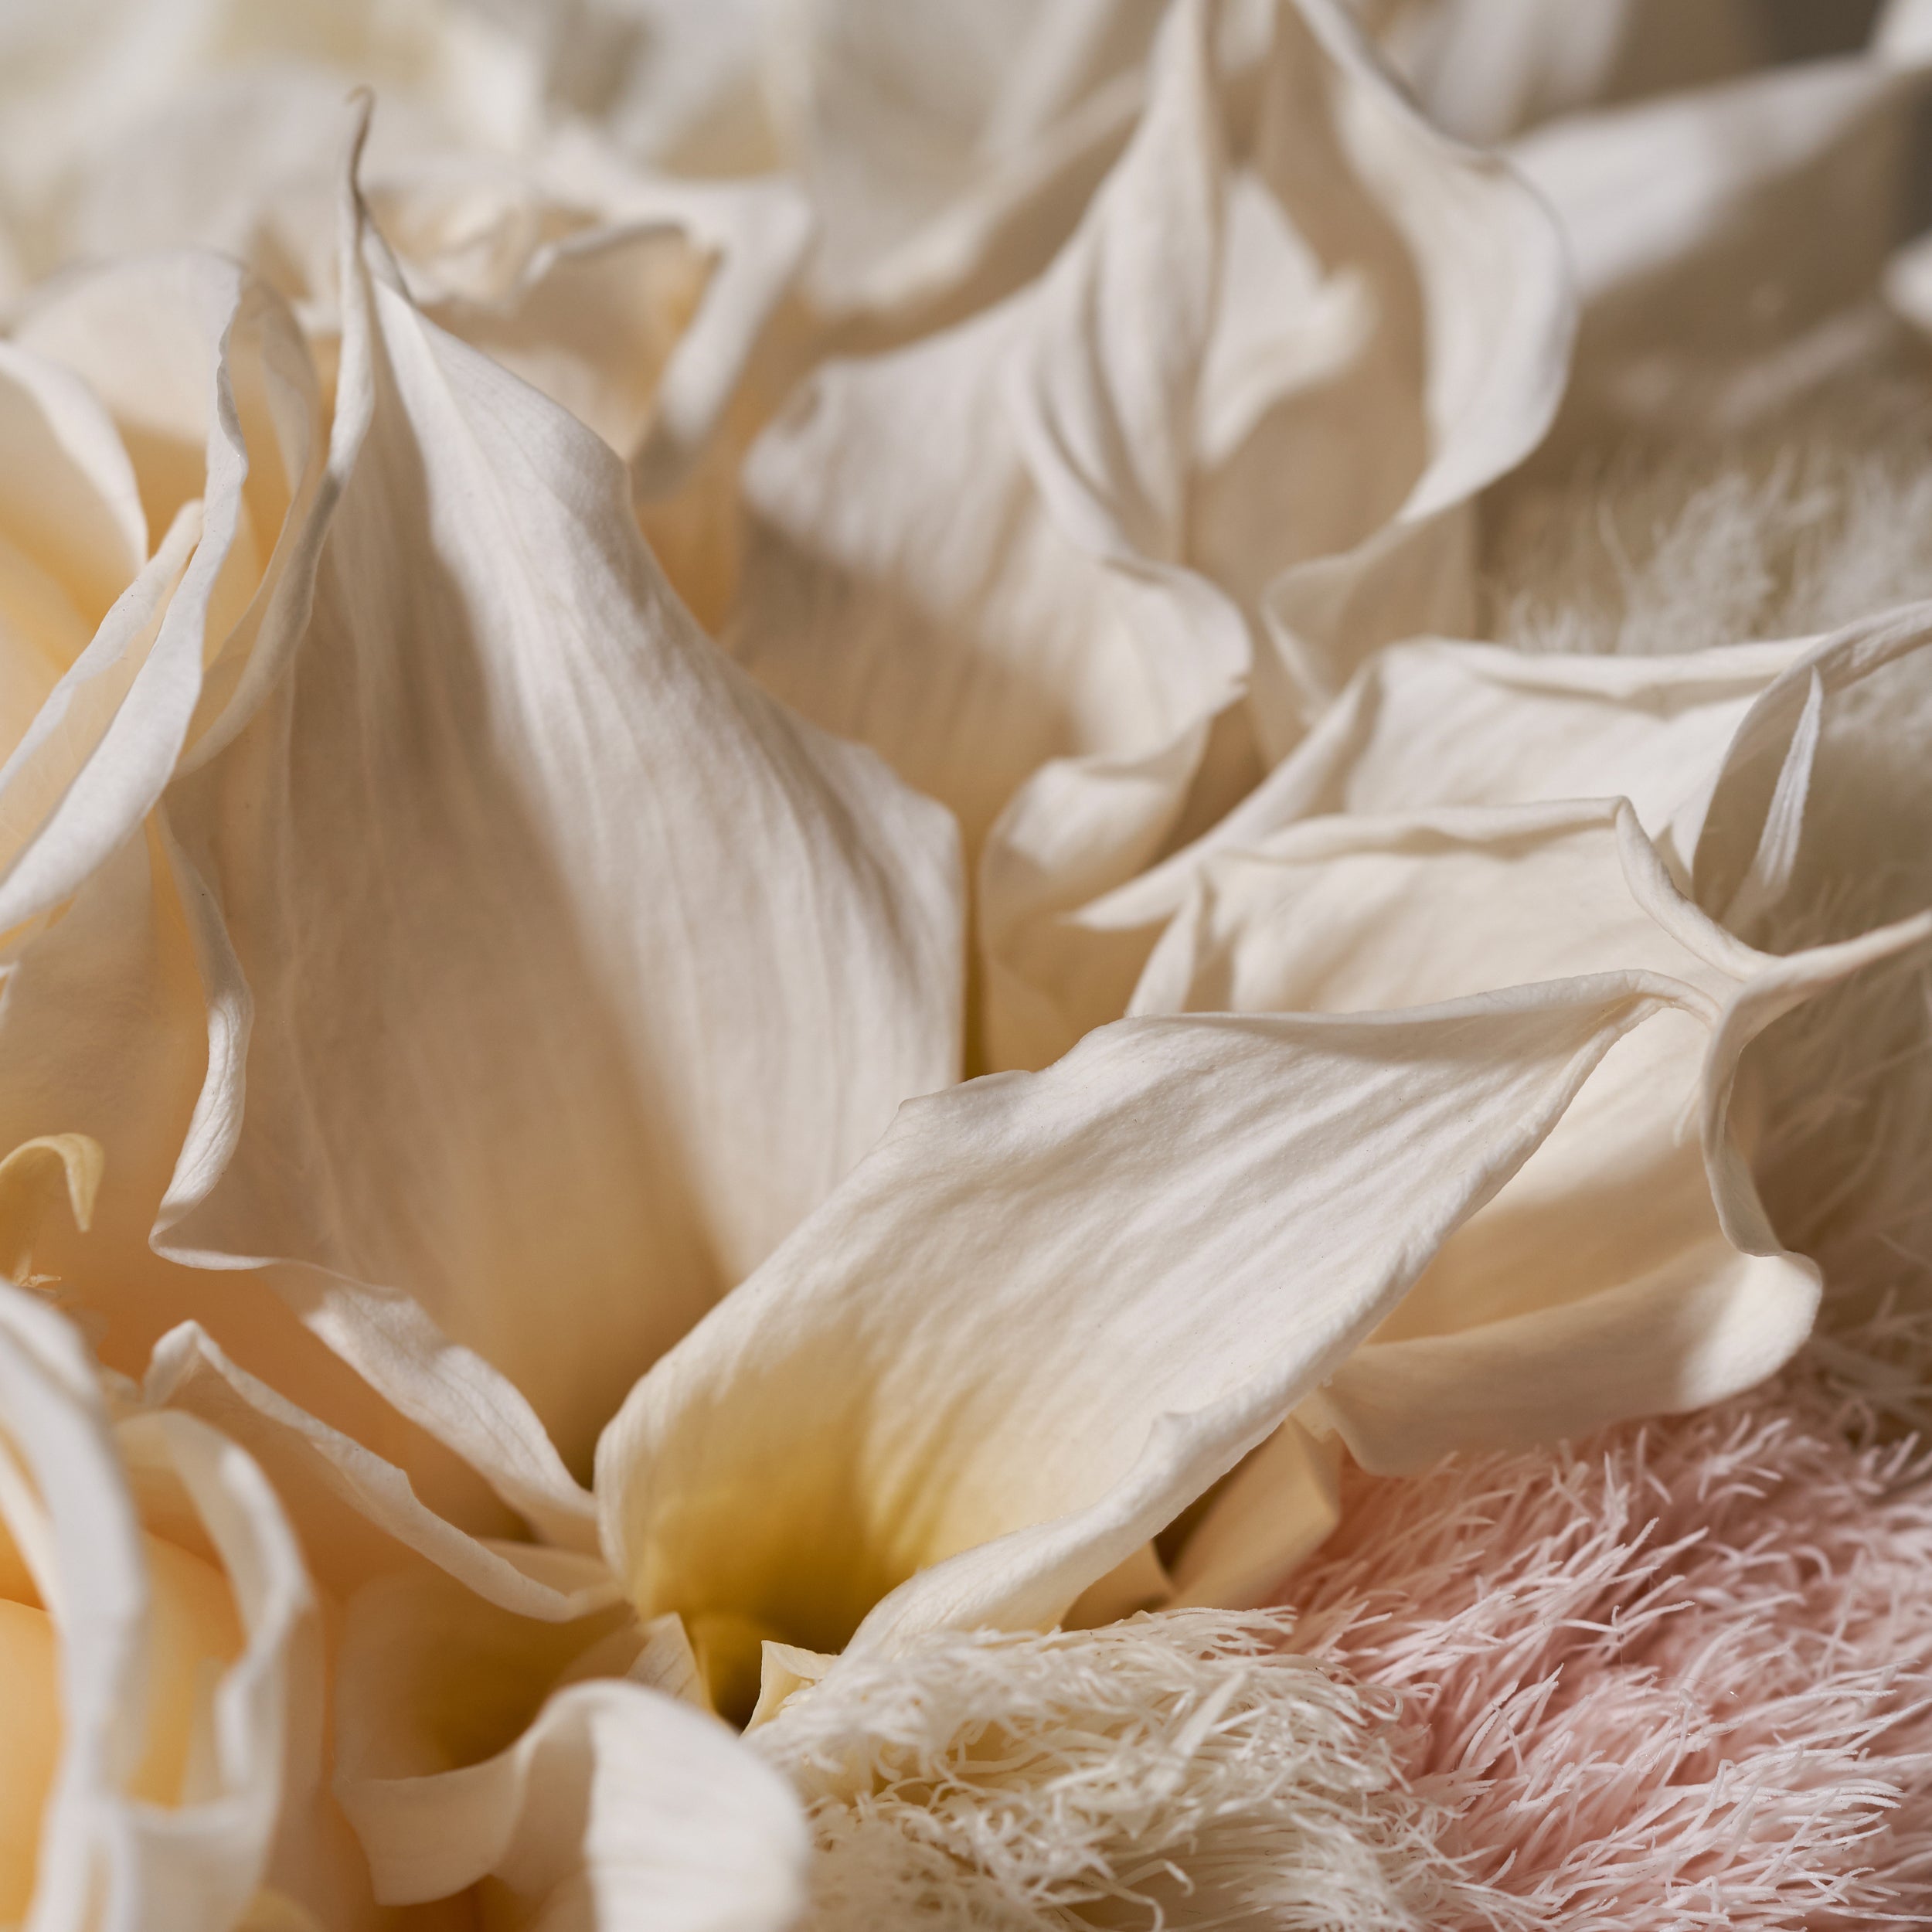 Seashell Calla Lily Mixed Floral Arrangement Venus et Fleur